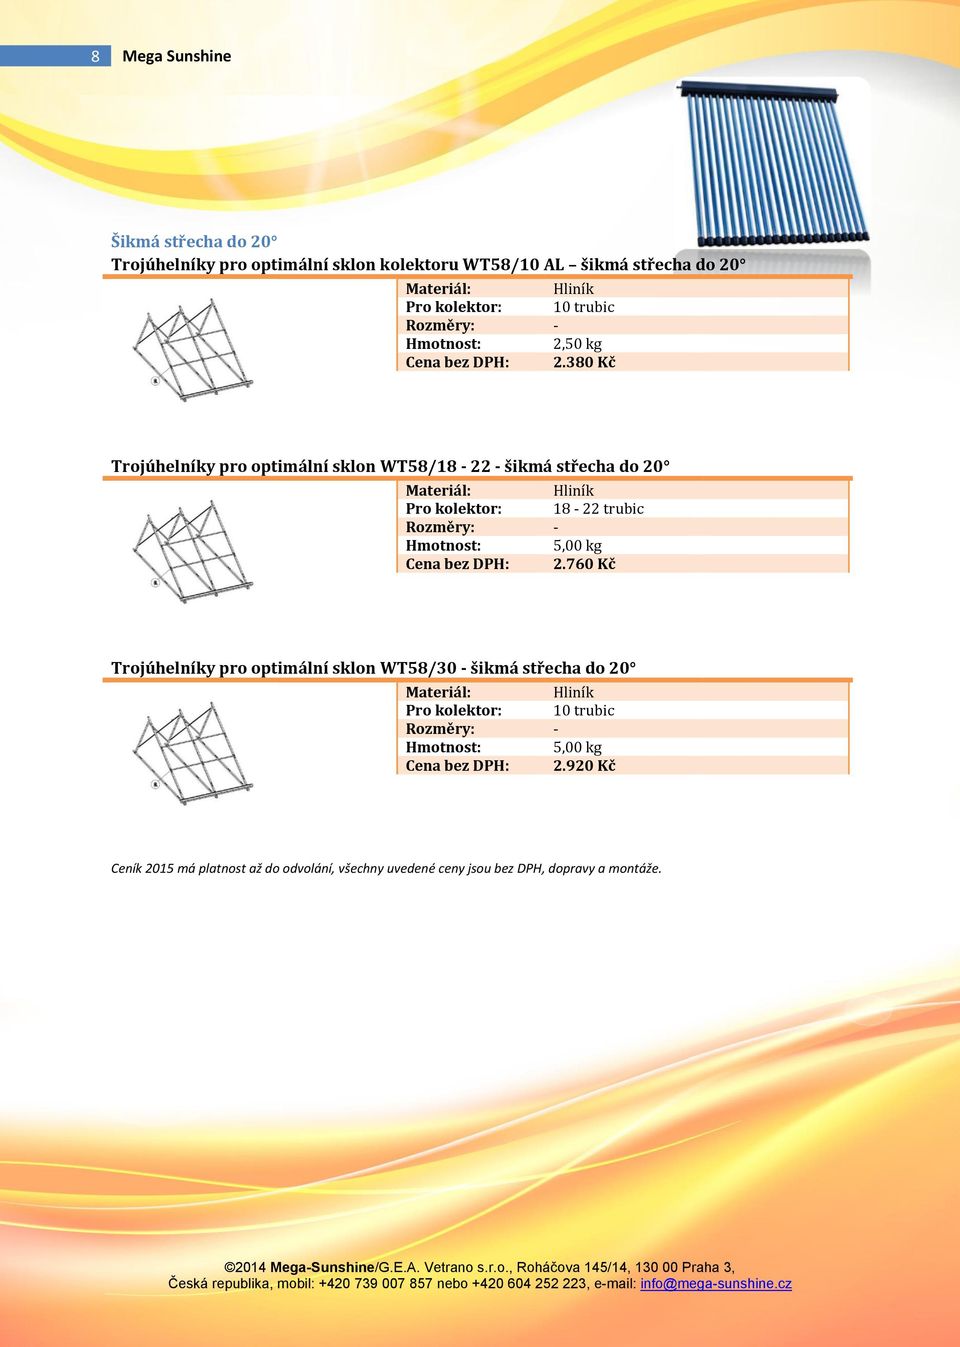 380 Kč Trojúhelníky pro optimální sklon WT58/18-22 - šikmá střecha do 20 Hliník Pro kolektor: 18-22 trubic 5,00 kg Cena bez DPH: